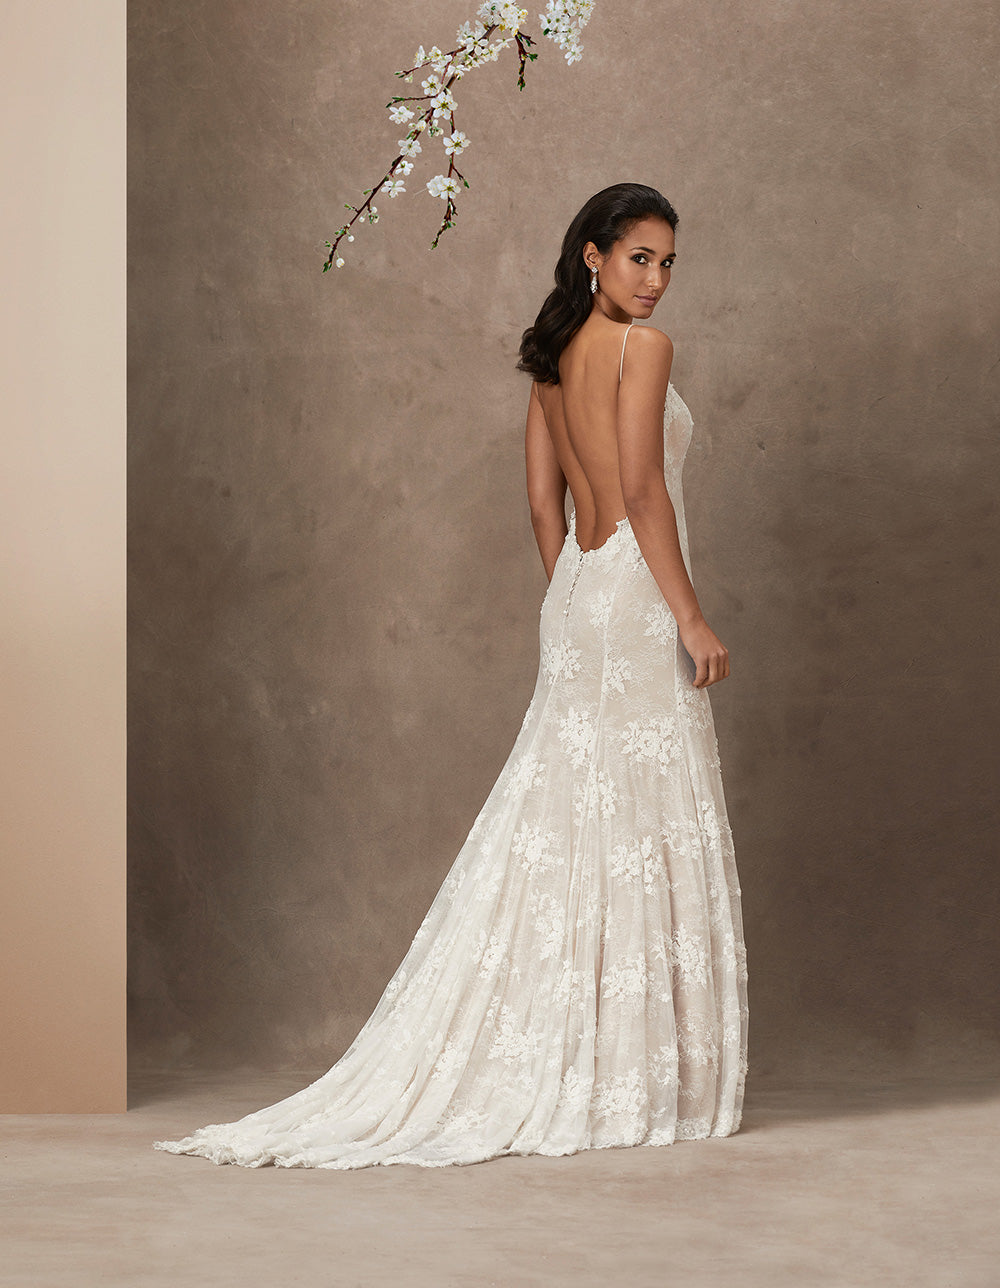 Blush luxury wedding gowns by Caroline Castigliano